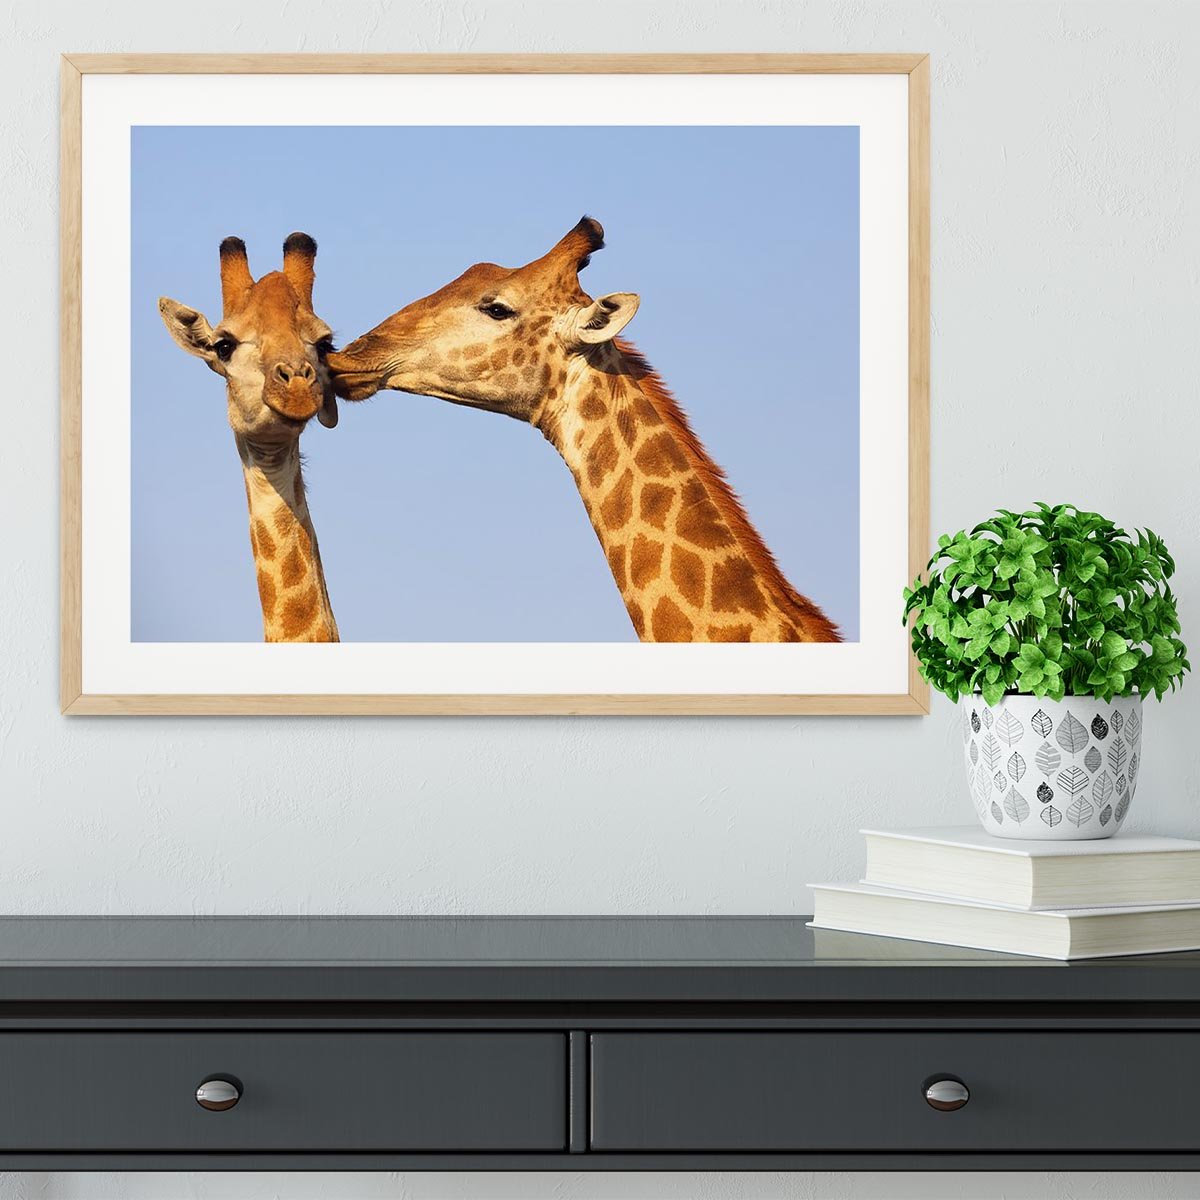 Giraffe pair bonding Framed Print - Canvas Art Rocks - 3